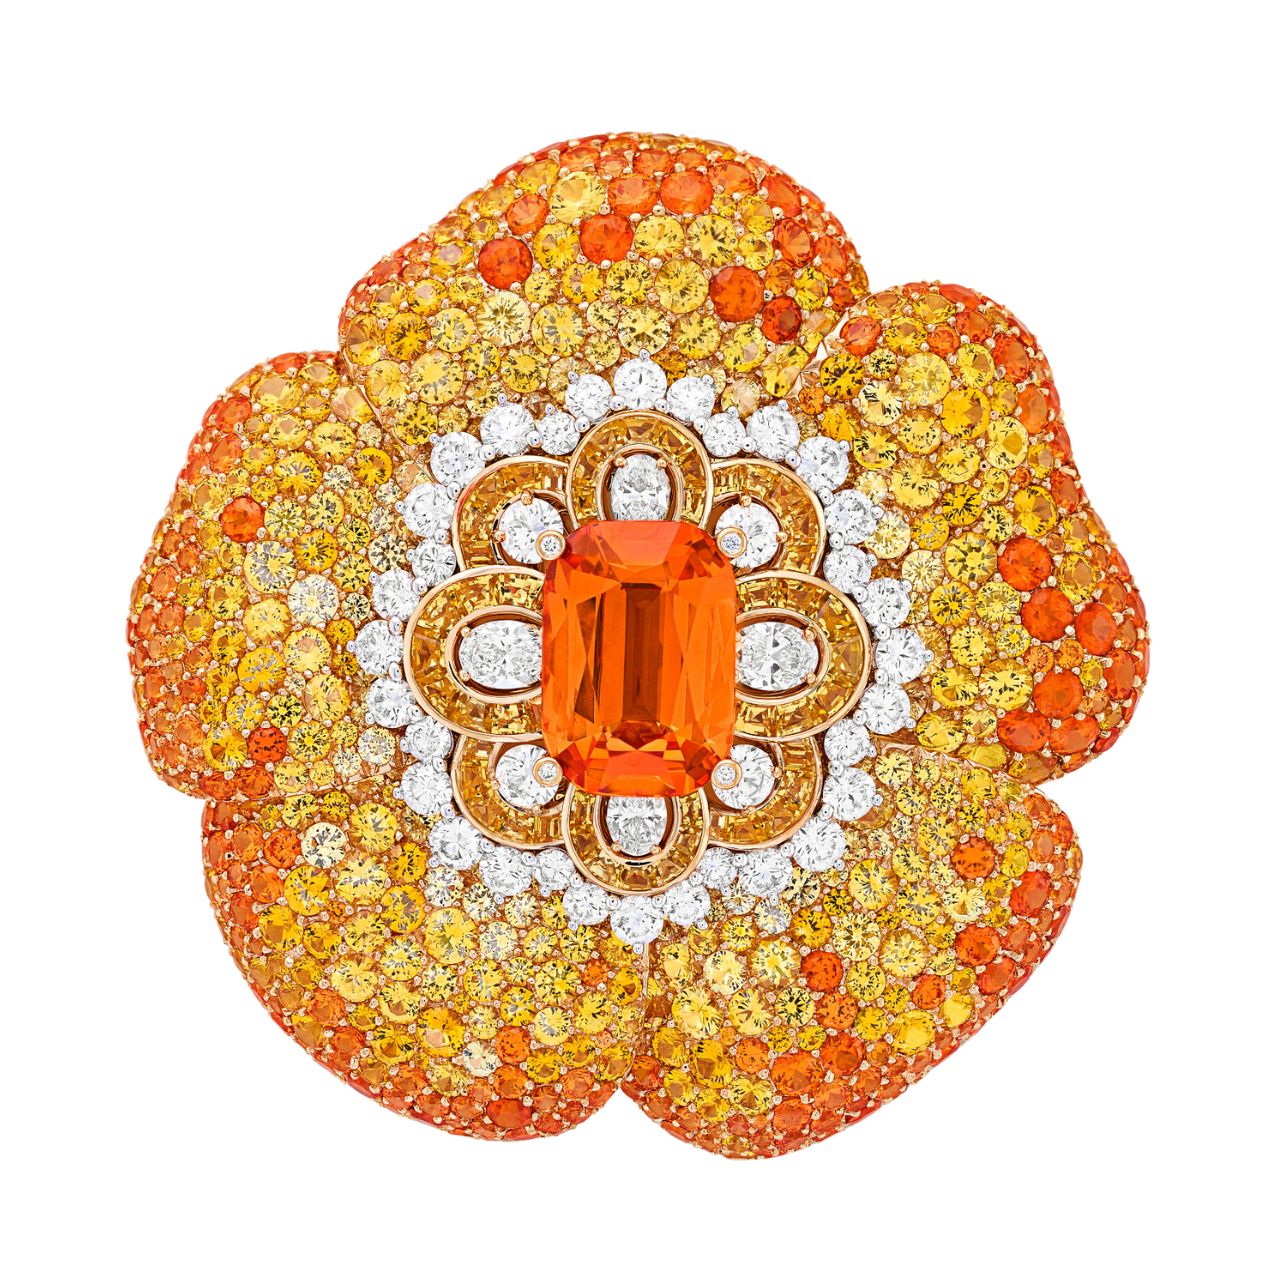 Fleur de Soleil clip featuring an 11.22-carat cushion-cut spessartine garnet, yellow sapphires, spessartine garnets, and diamonds.